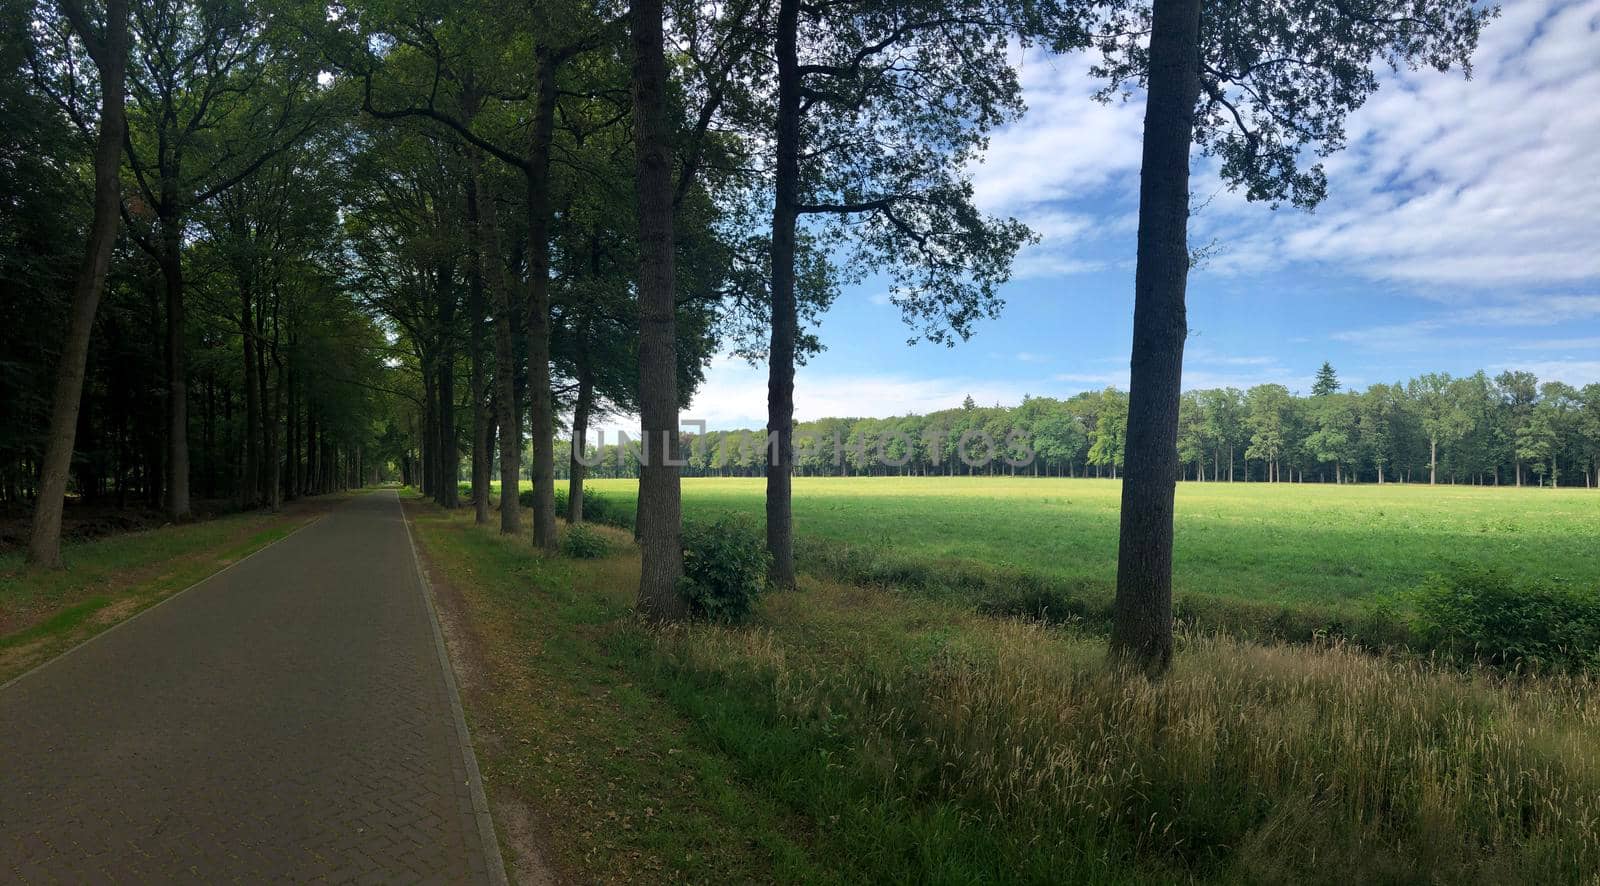 Road through the forest around Slangenburg in The Netherlands